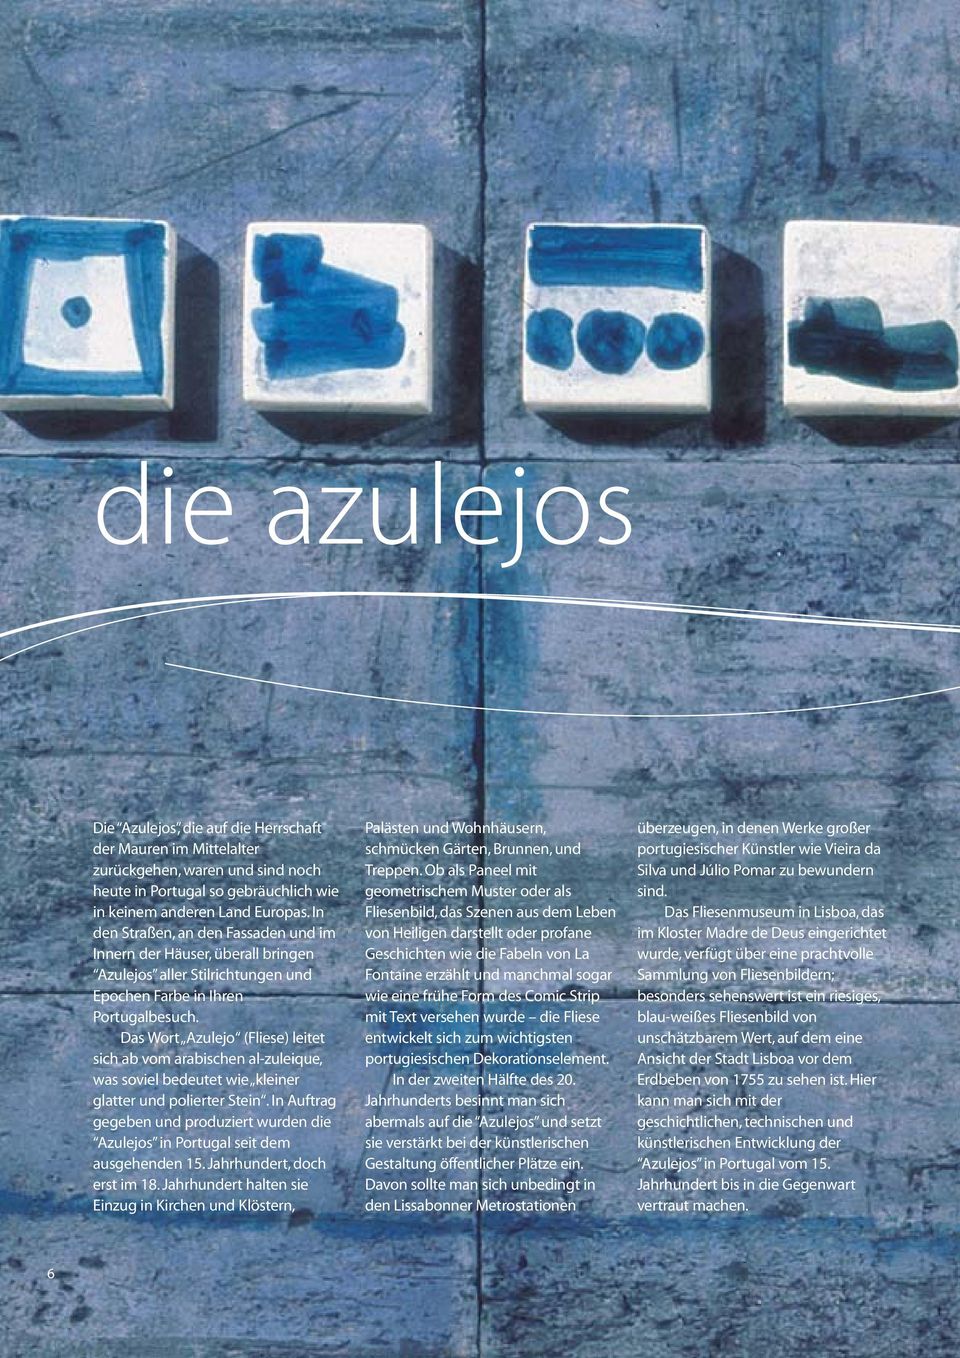 Das Wort Azulejo (Fliese) leitet sich ab vom arabischen al-zuleique, was soviel bedeutet wie kleiner glatter und polierter Stein.